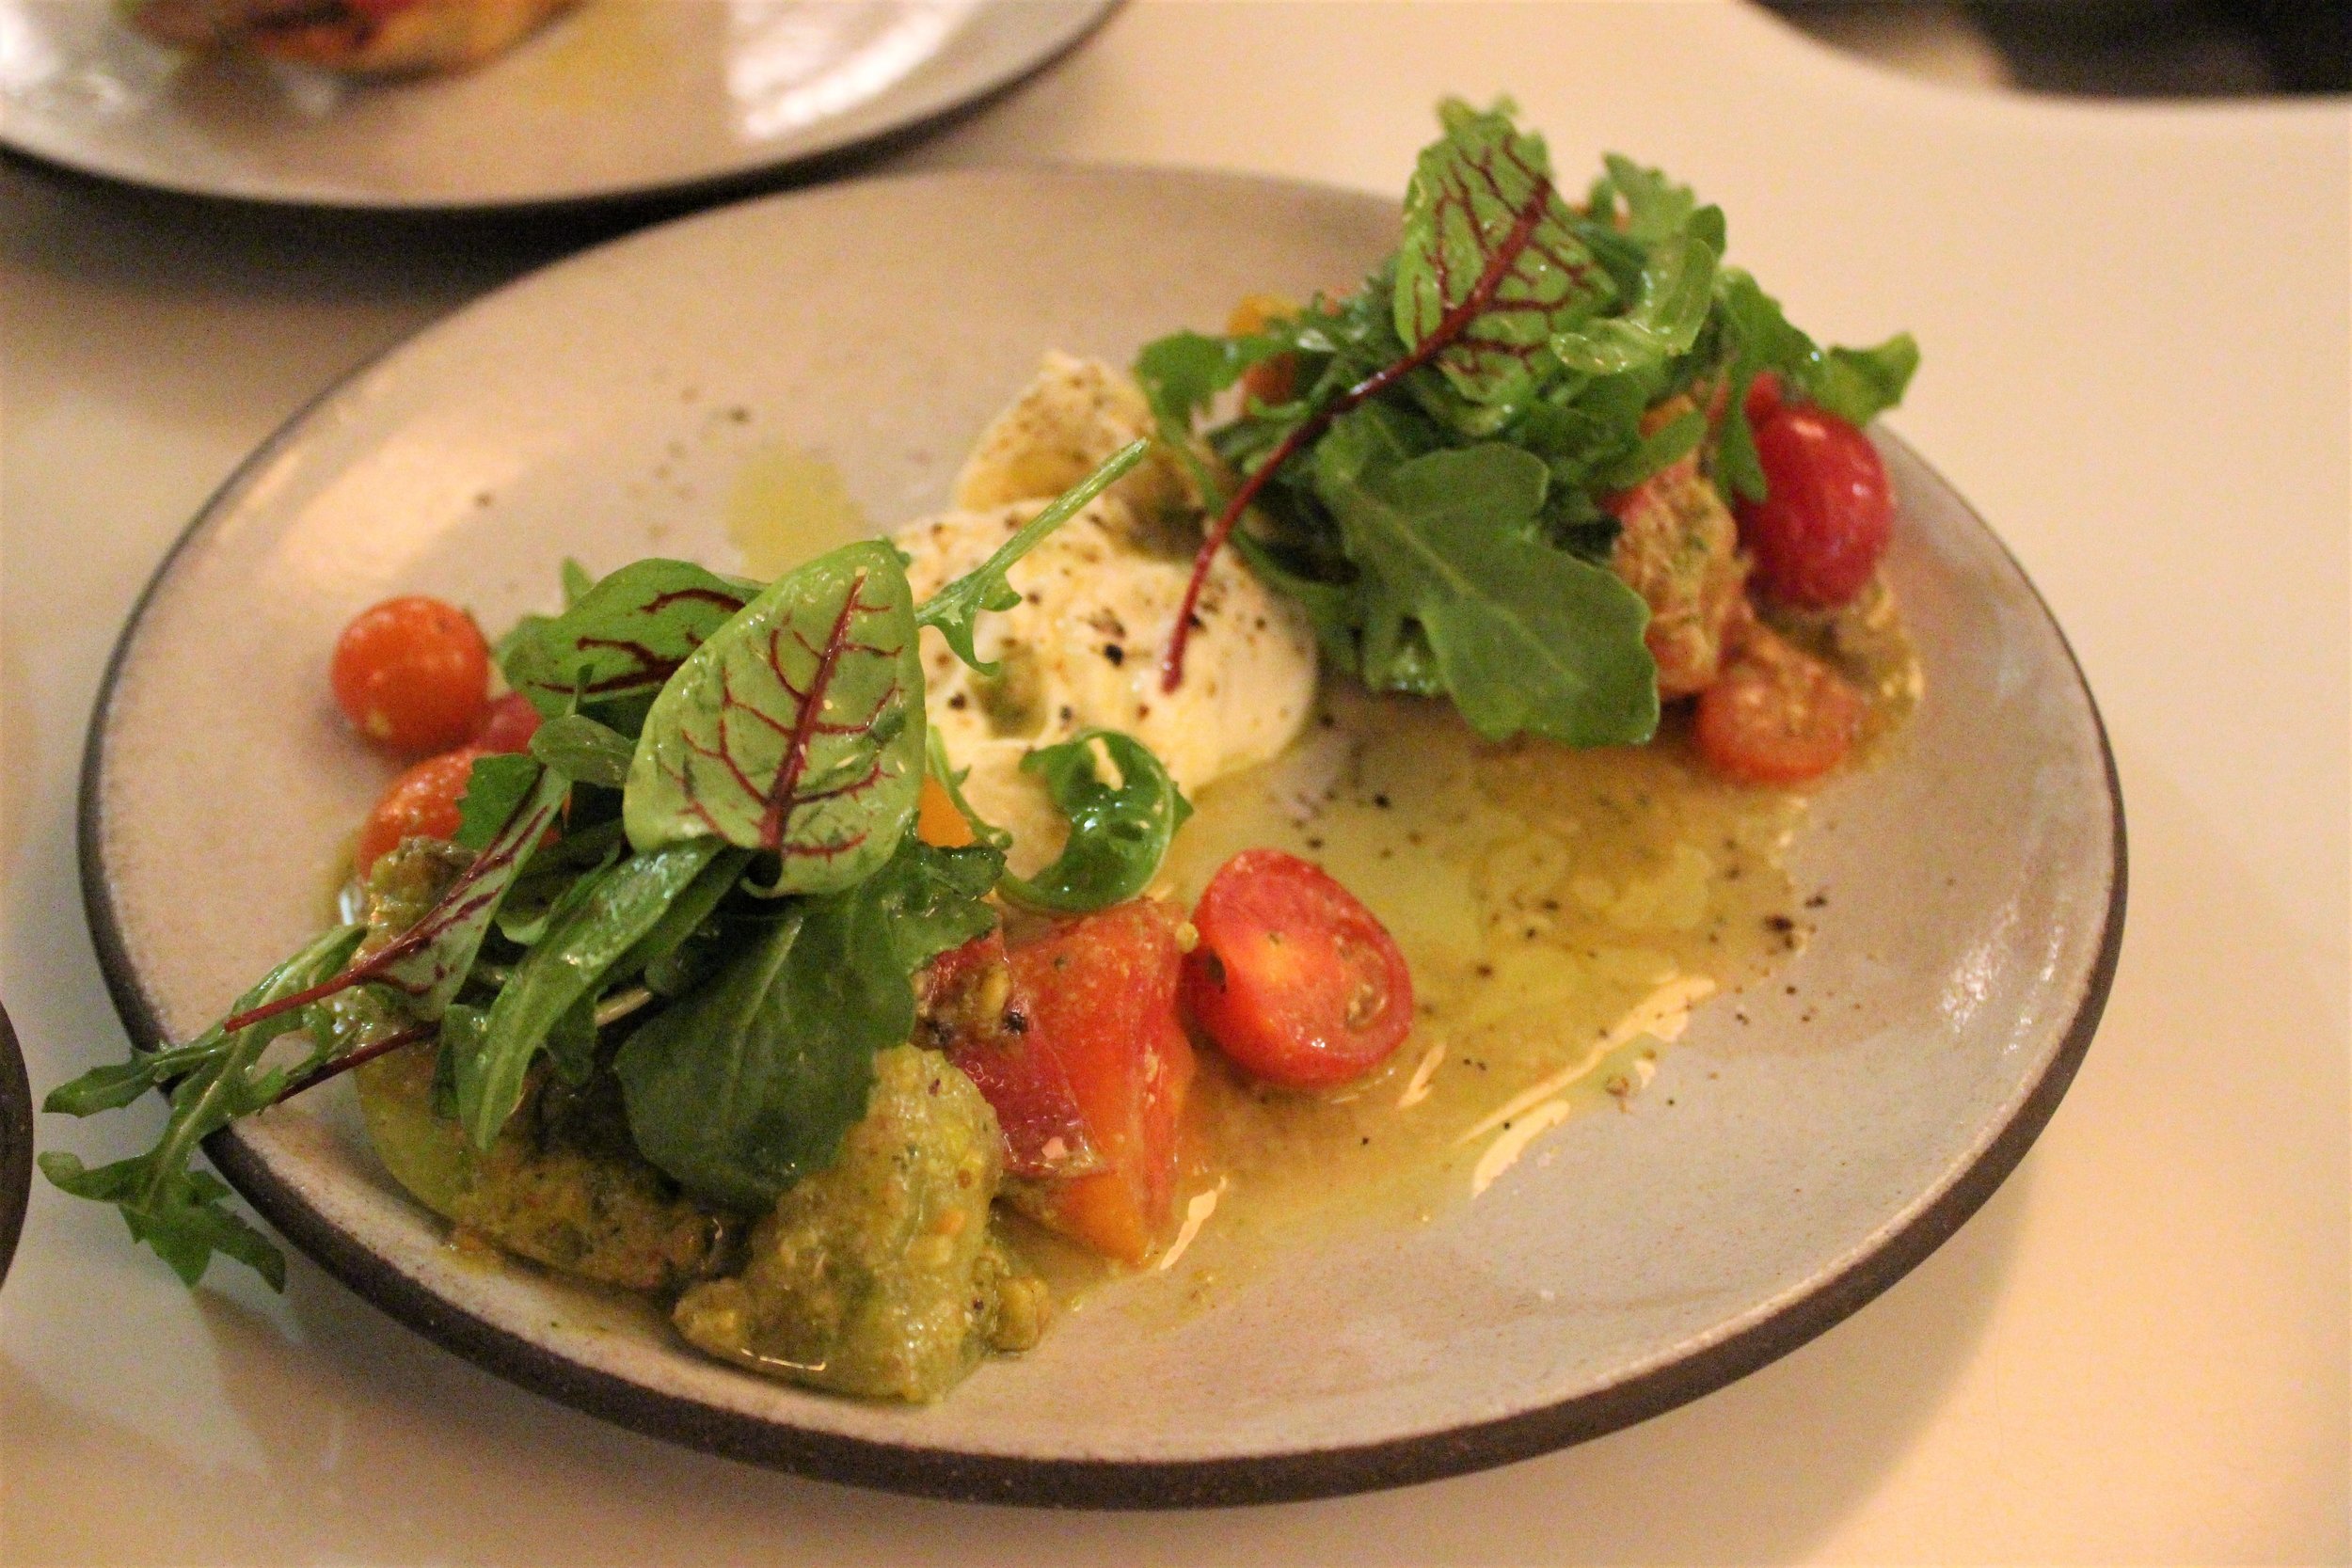 Heirloom Tomato Salad with Burrata, Pistachio Pesto, Arugula at Sportello in Boston